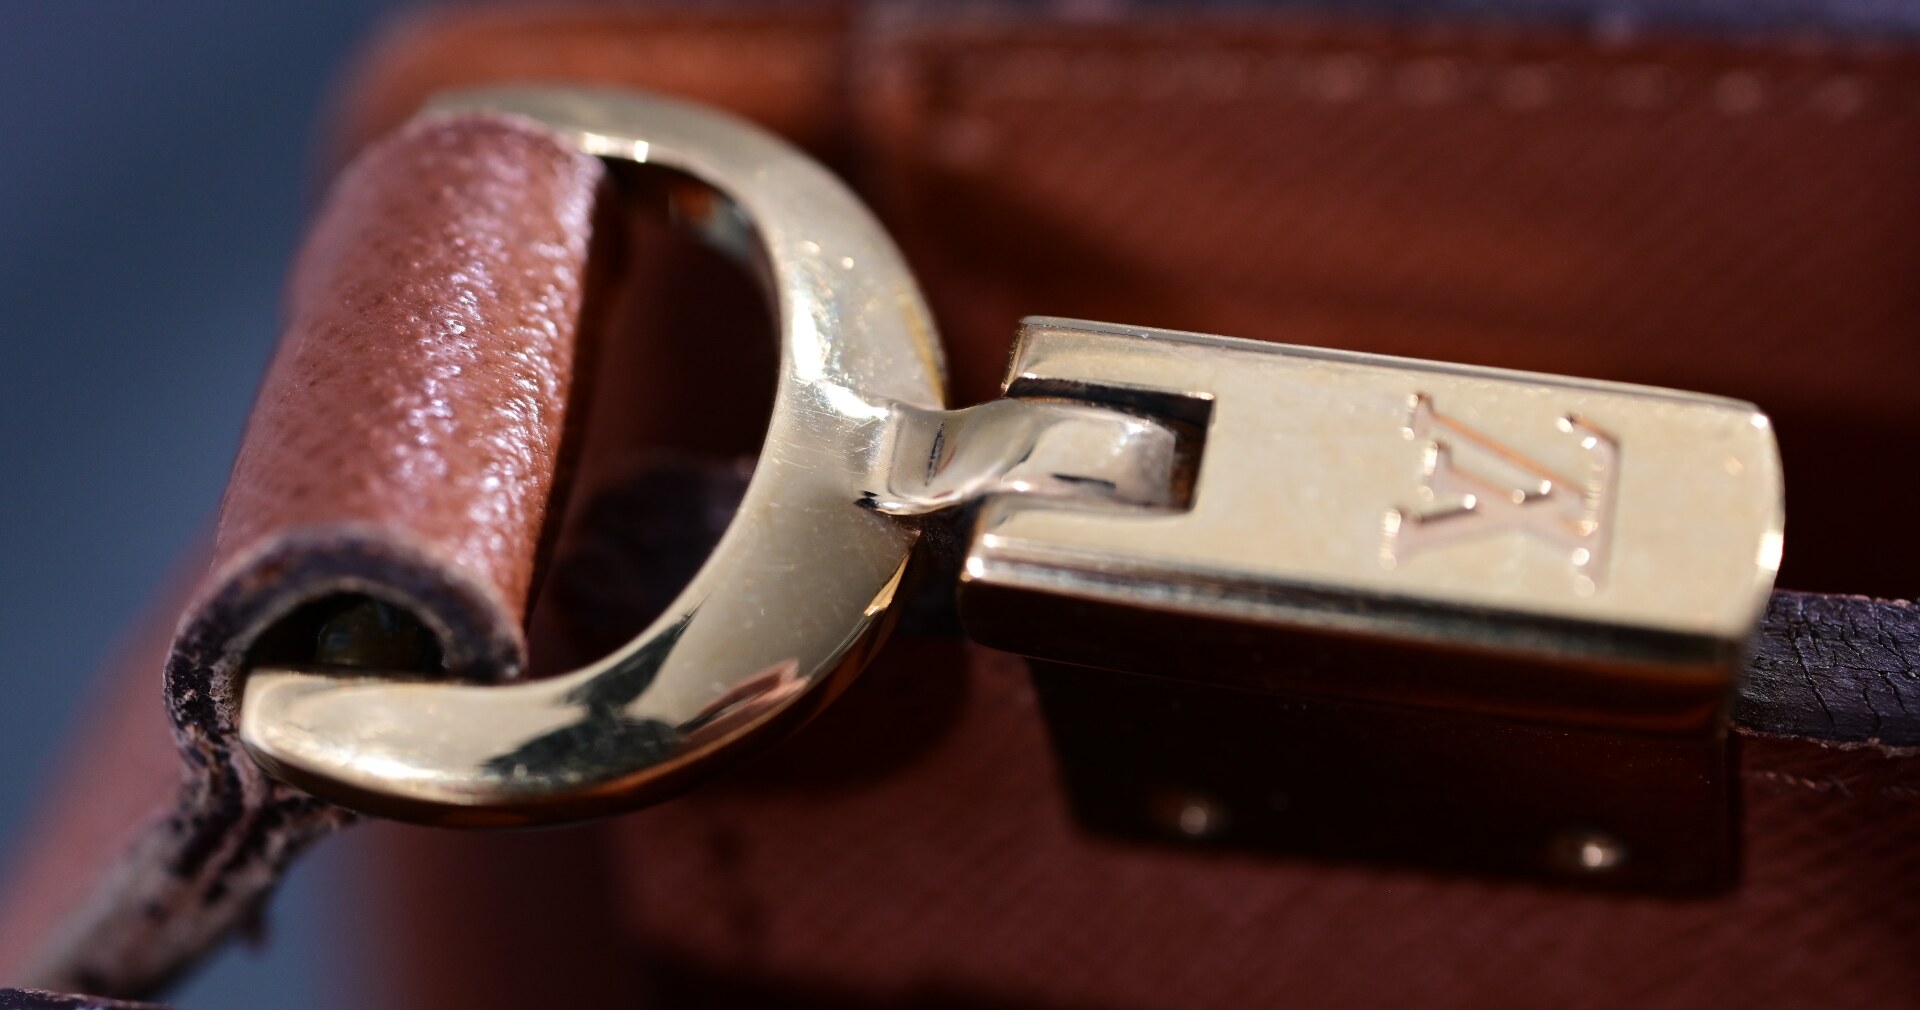 Umhänge - Handtasche "Louis Vuitton", stärkere Alters- und Gebrauchsspuren, ca. 24 x 30 cm, Innenfa - Image 9 of 10